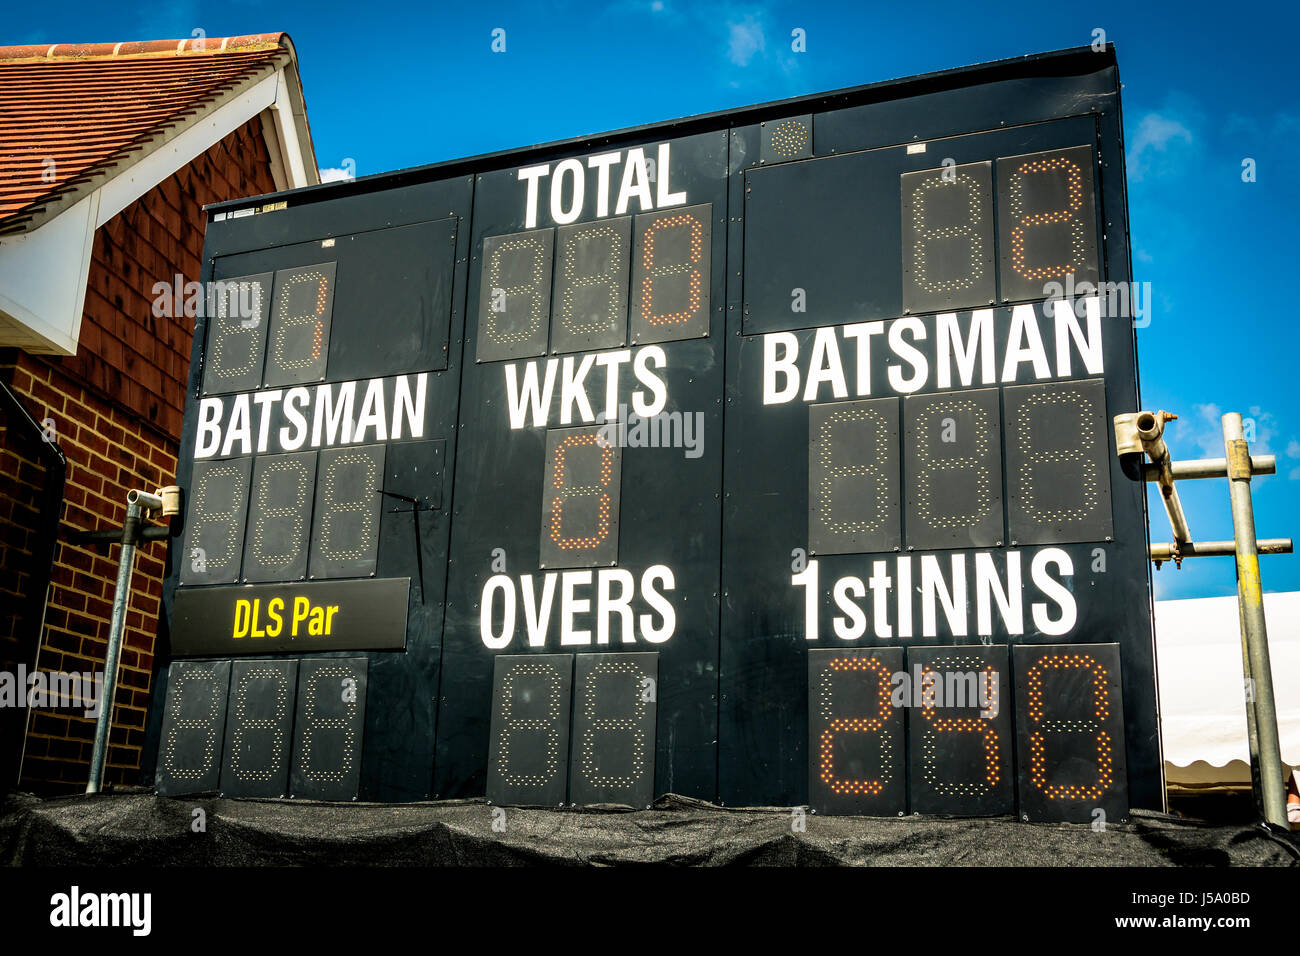 Elettronico di cricket scoreboard mostra eseguire chase nel secondo inning Foto Stock